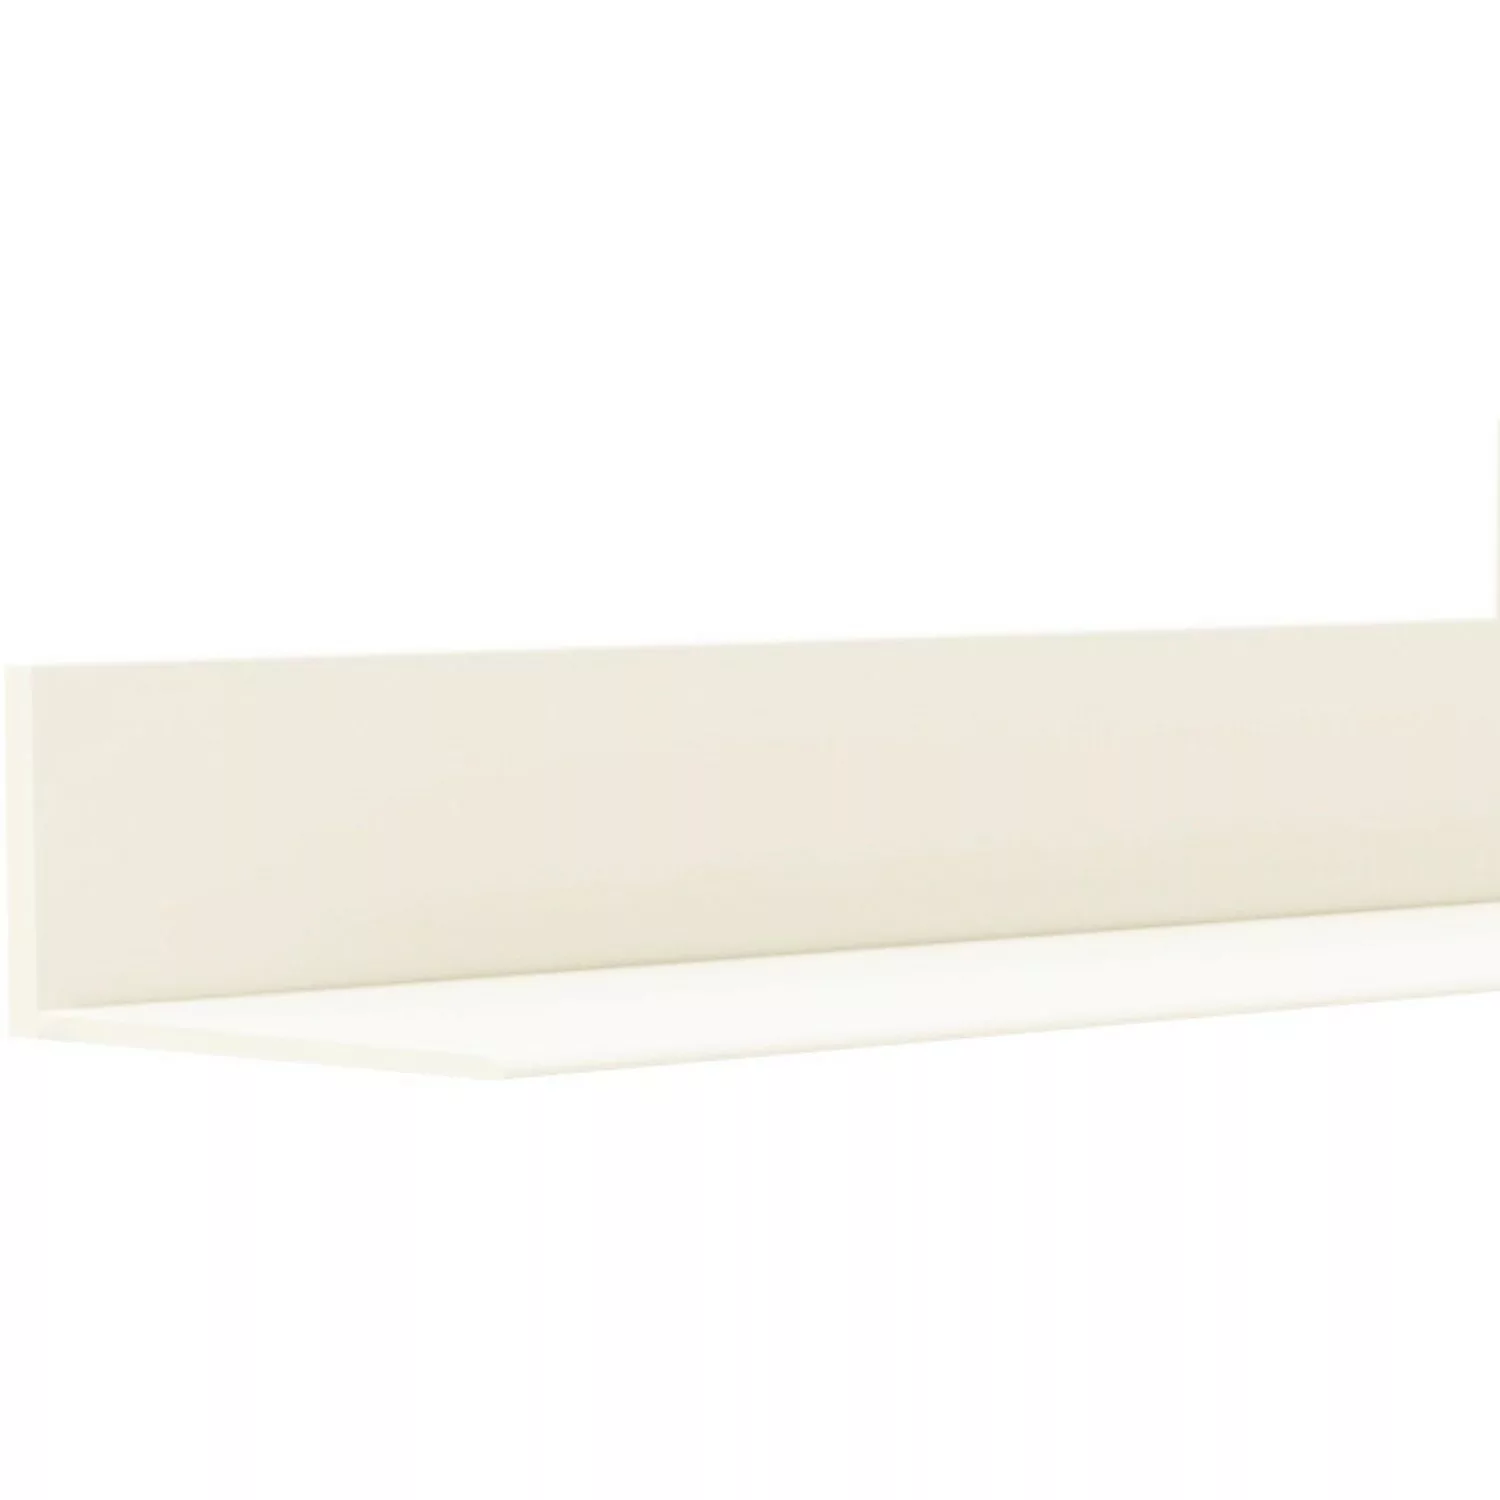 Knickwinkel Weiß Selbstklebend 18 mm x 18 mm Länge 25000 mm günstig online kaufen